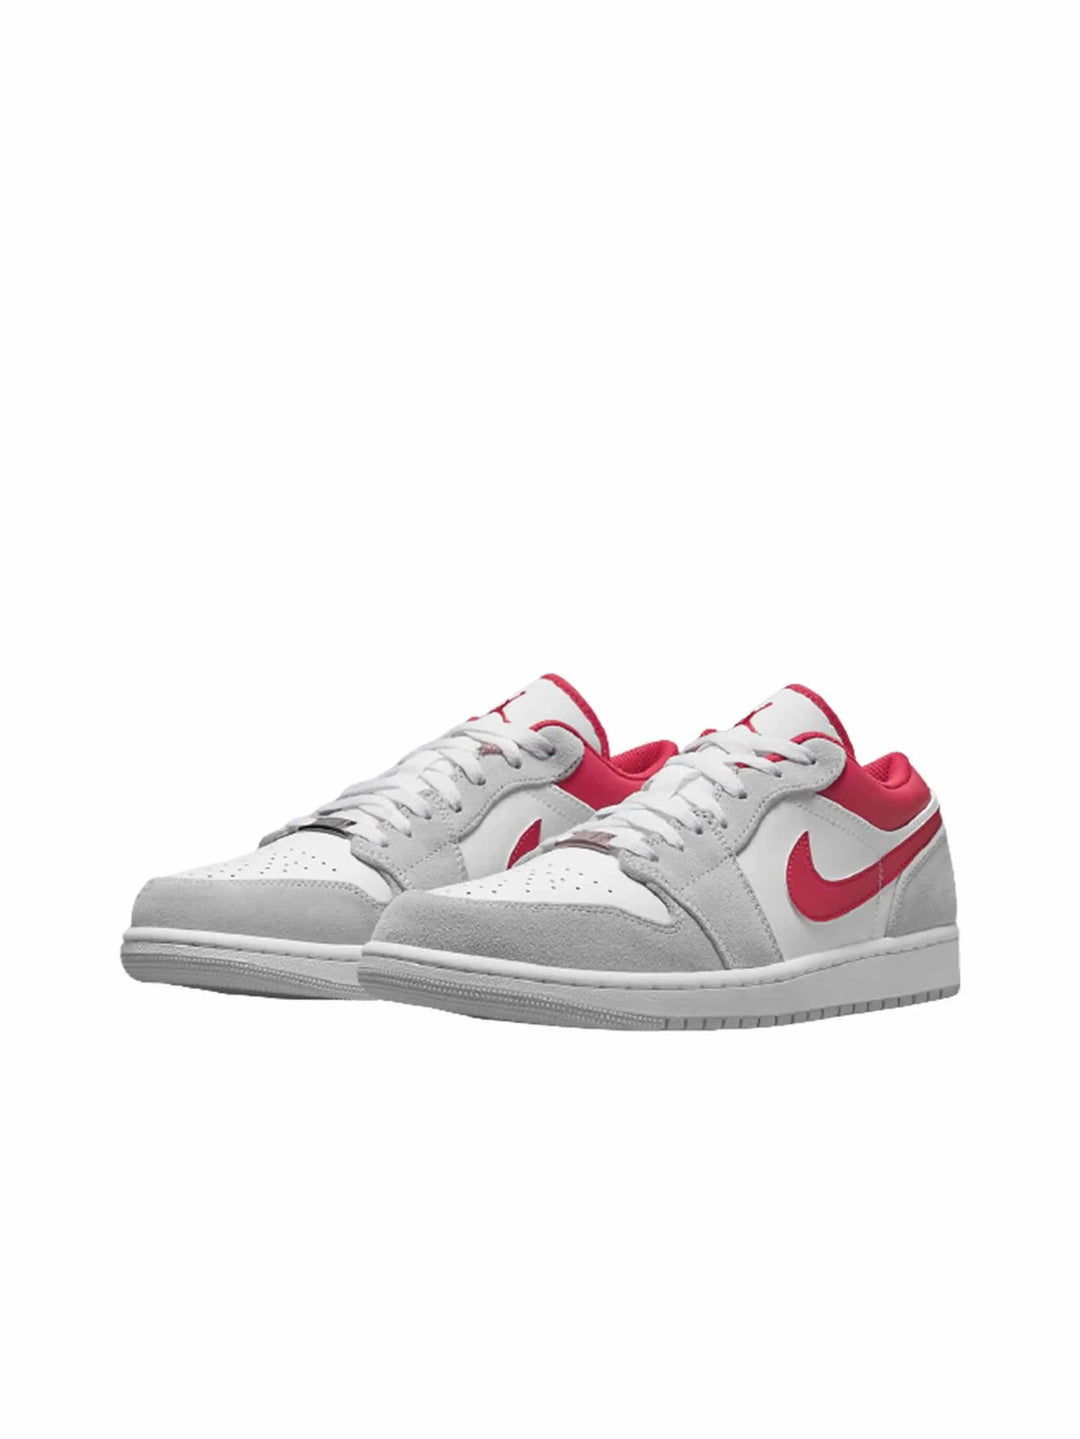 Nike Air Jordan 1 Low SE Light Smoke Grey Gym Red - Prior